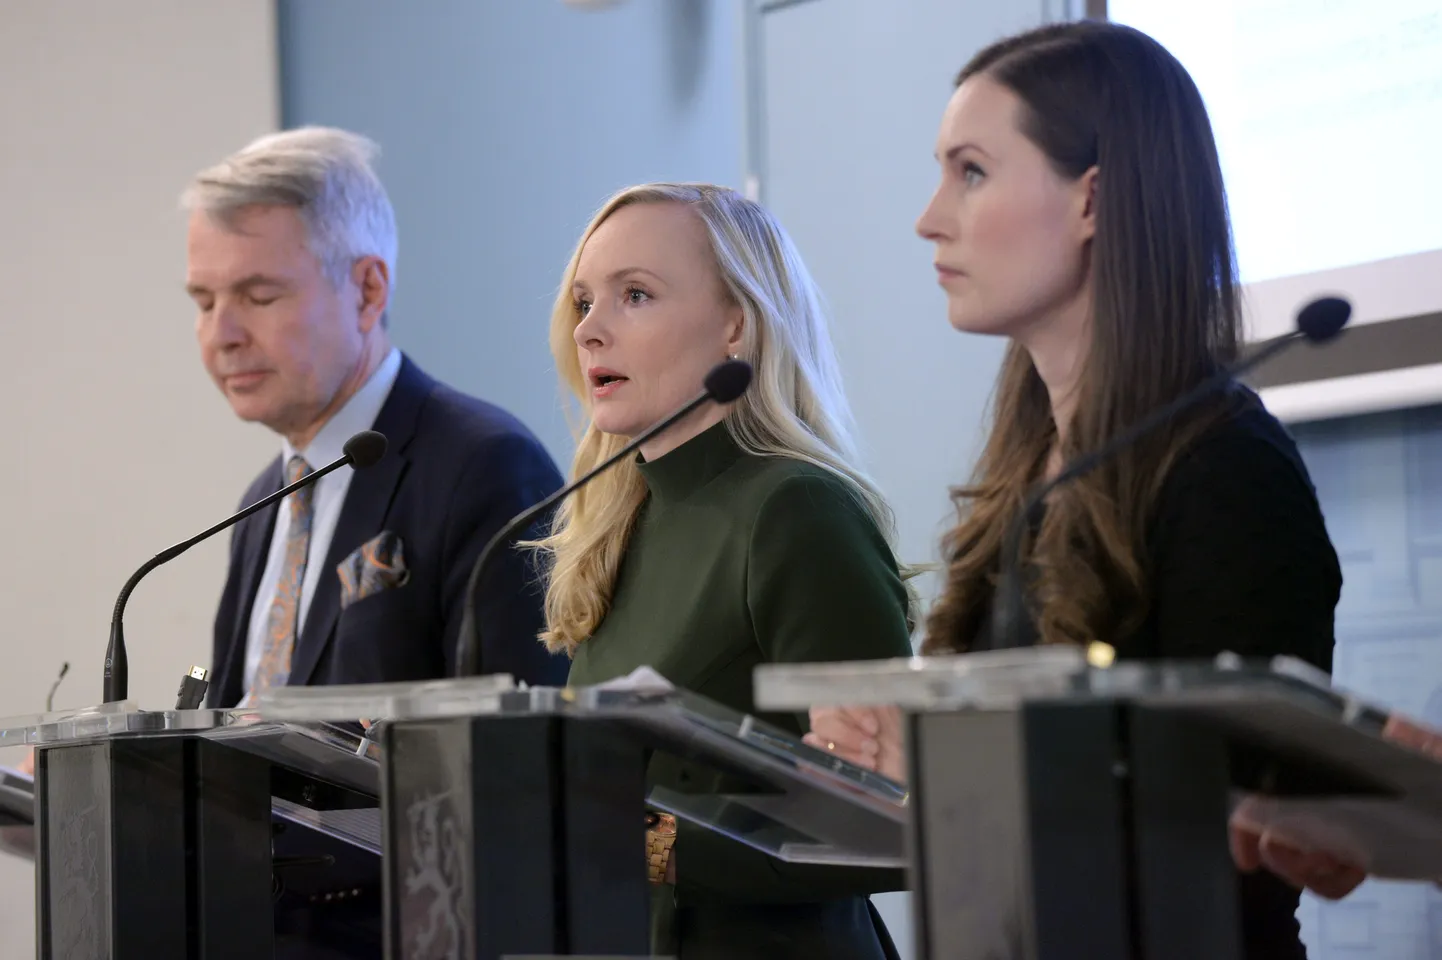 Esmaspäeval kuulutas Soome valitsus välja erakorralised meetmed võitluses koroonaviiruse levikuga. Pildil valitsuse pressikonverentsil välisminister Pekka Haavisto, siseminister Maria Ohisalo ja peaminister Sanna Marin.